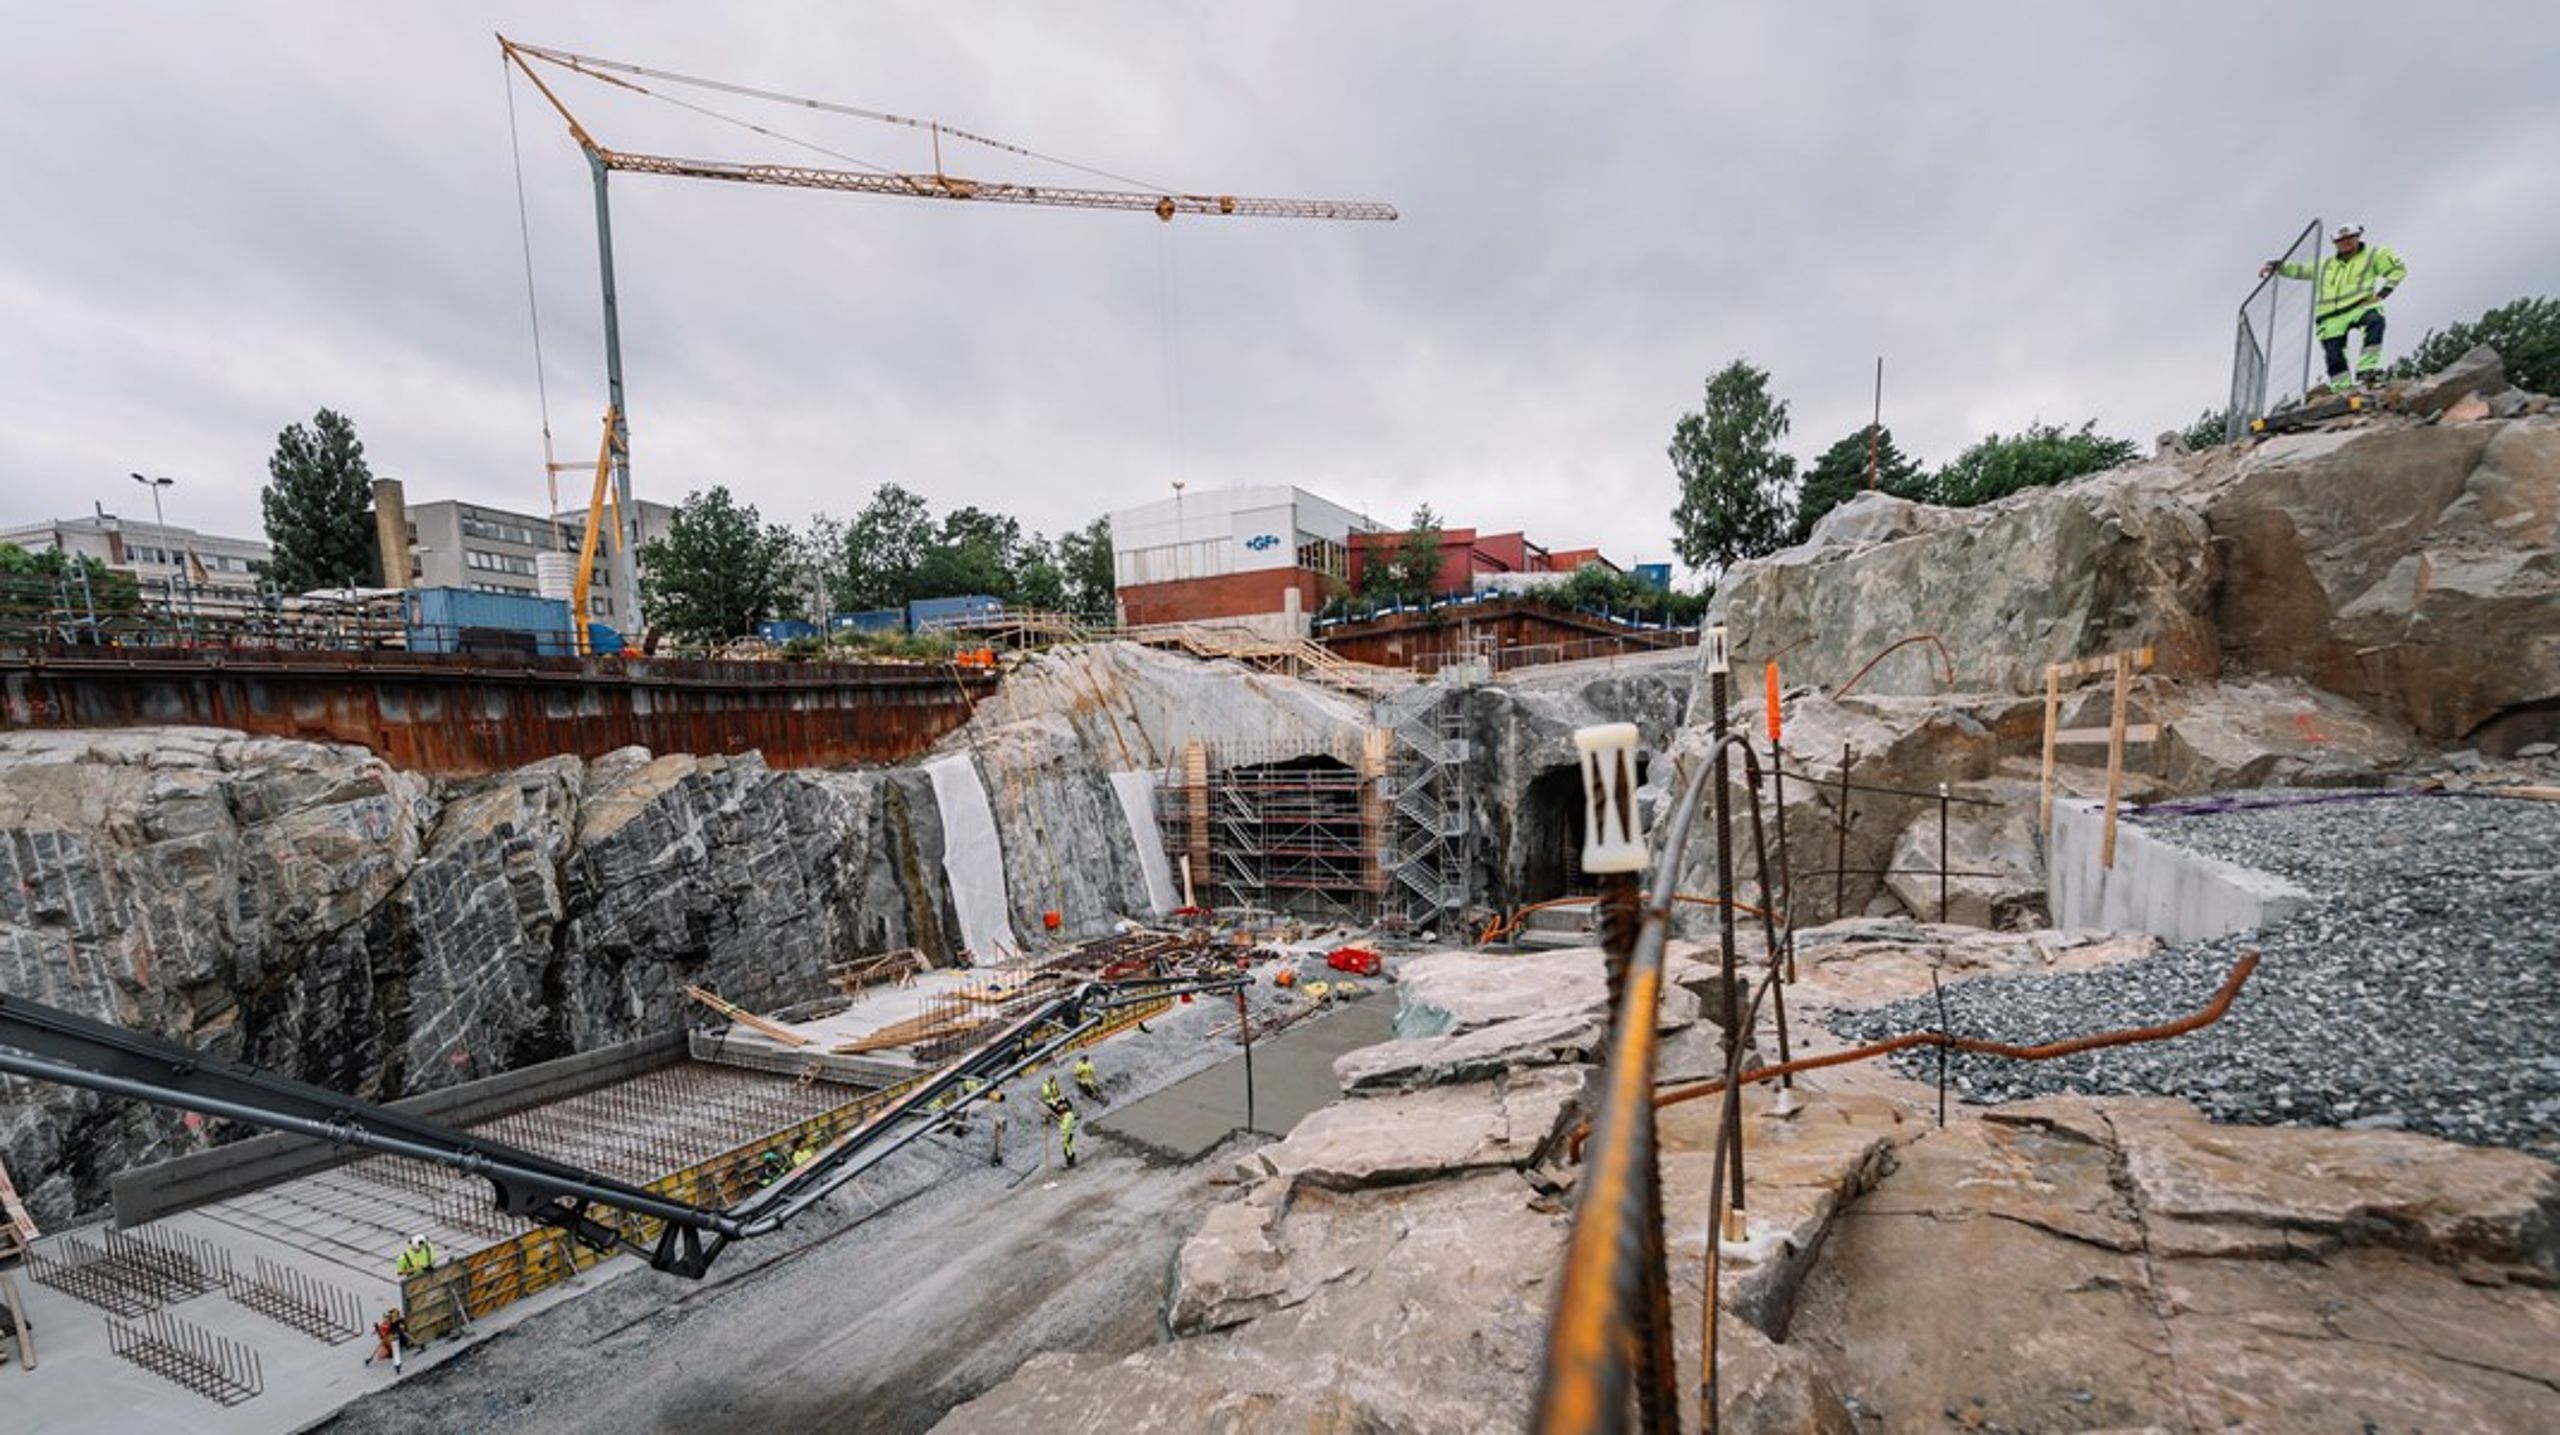 Förbifart Stockholm har hittills genererat omkring<span> 25 miljoner ton<span> aktuellt material. <br></span></span><br>